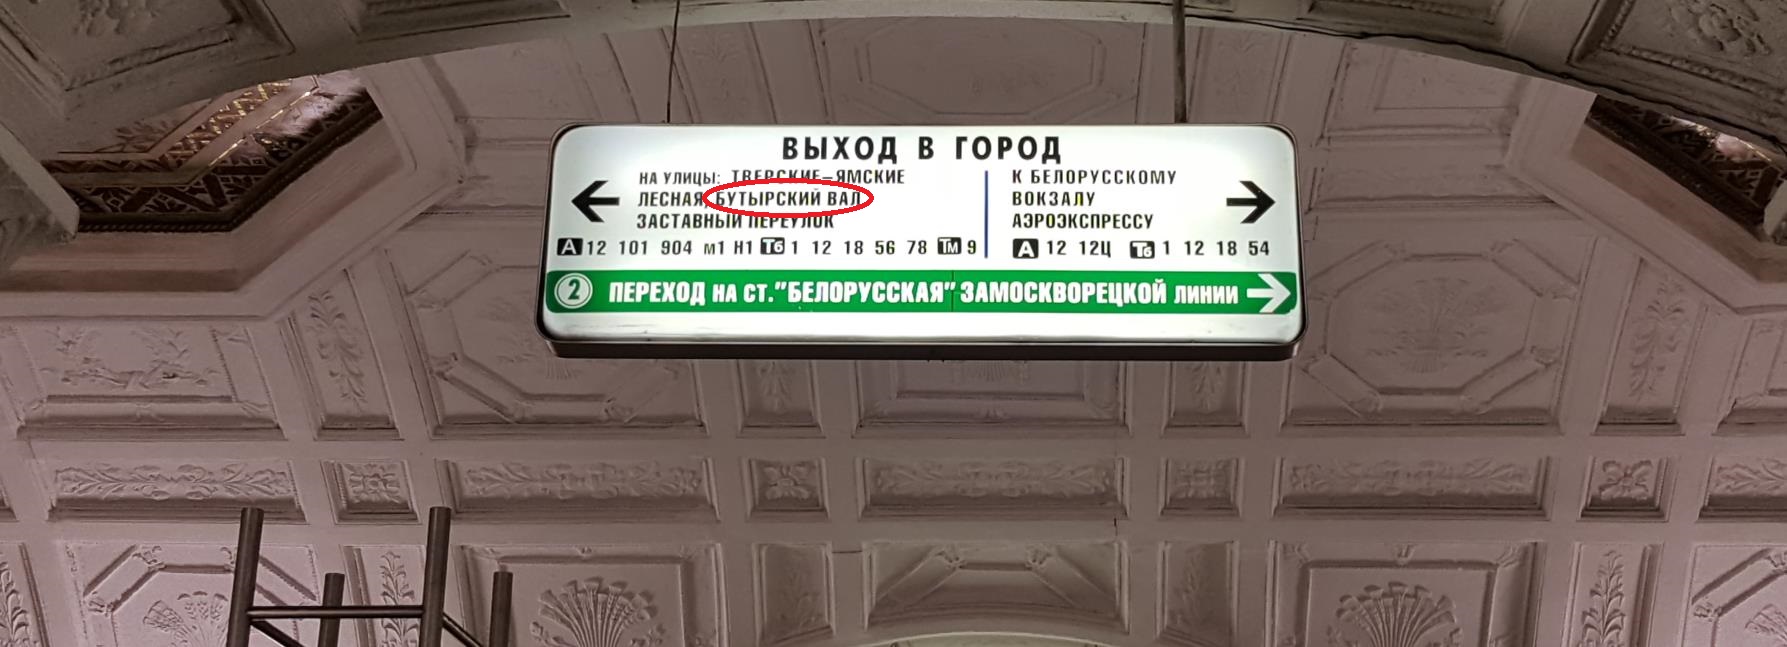 Белорусская кольцевая выходы. Белорусская Кольцевая выход 1. Метро белорусская Кольцевая выходы из метро. Станция метро белорусская радиальная выходы. Станция белорусская Кольцевая выход 1.